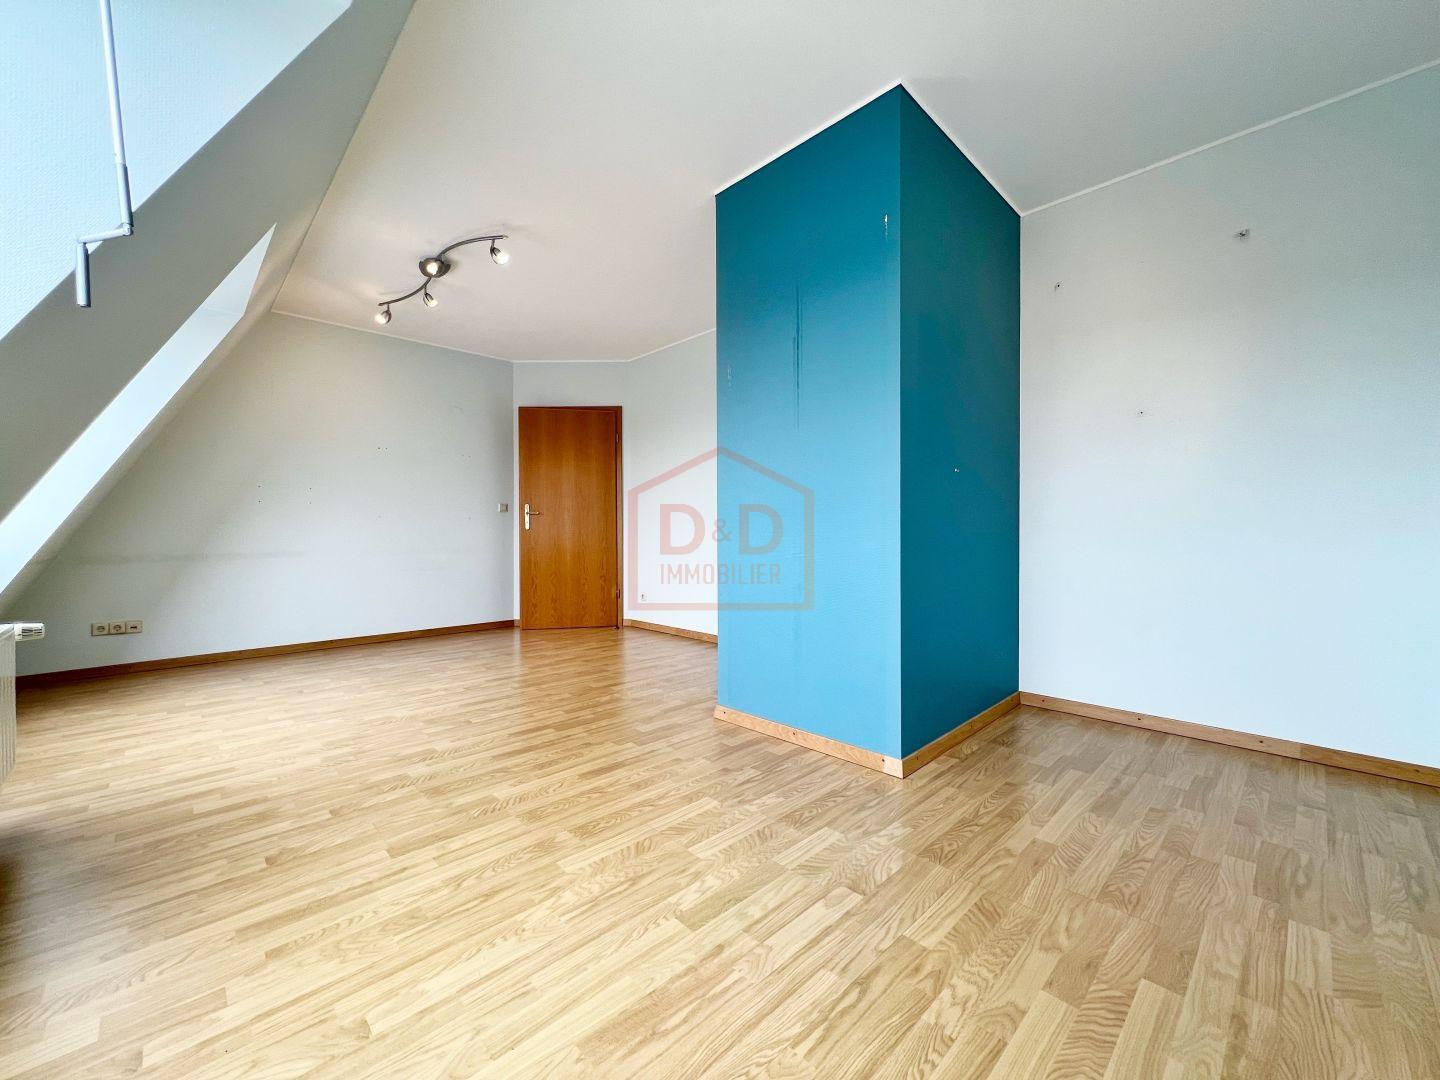 Appartement à Frisange, 92 m², 2 chambres, 1 salle de bain, 1 garage, 760 000 €